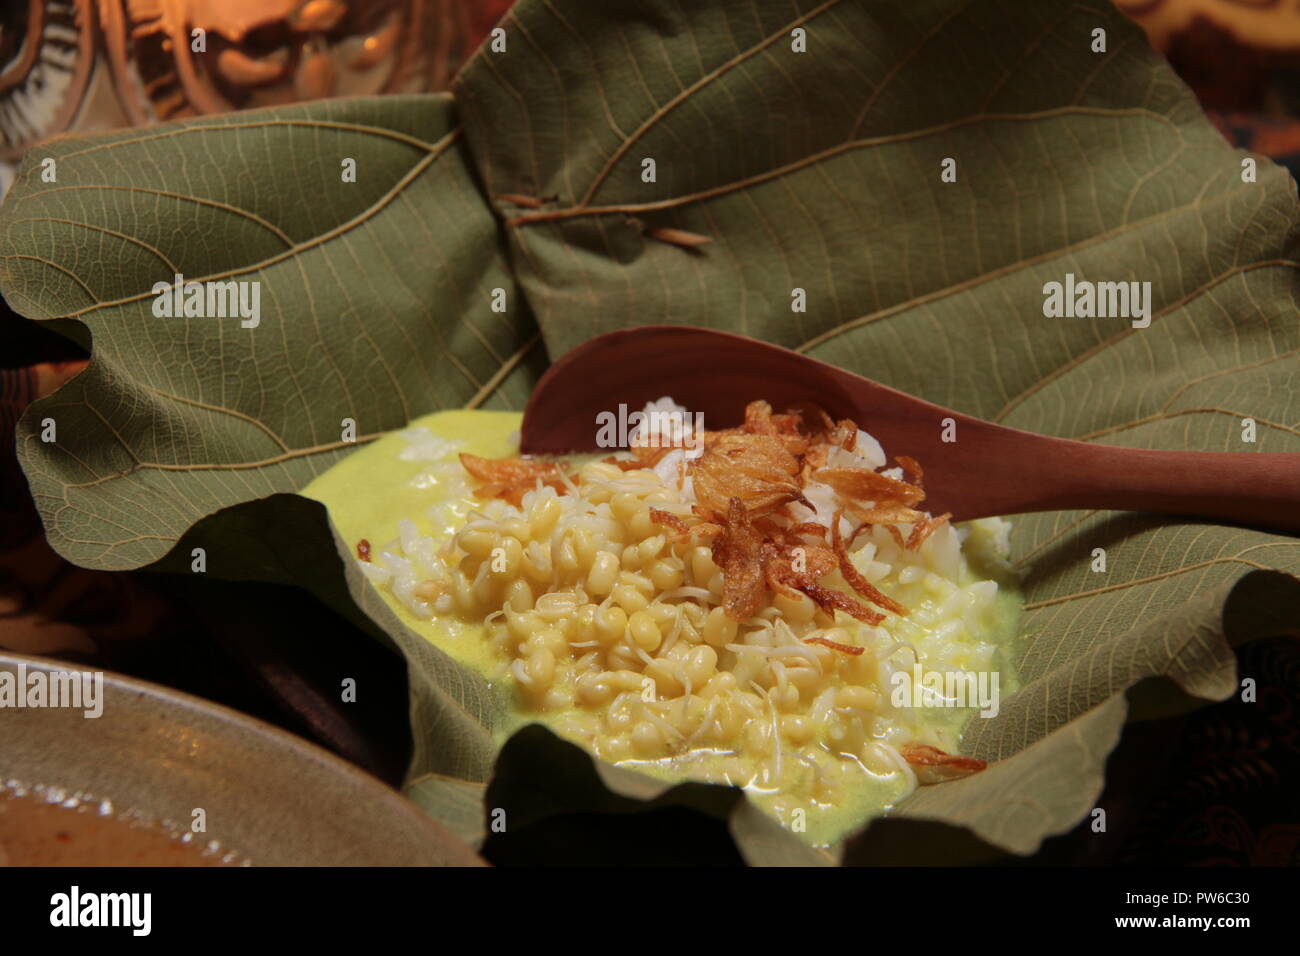 Opor Nasi ou Nasi Gulai, le riz dans la soupe de curry jaune, la populaire base de l'alimentation de Sate Blora. Servi dans un bol moyen, en authentique faite de feuilles de teck. Banque D'Images